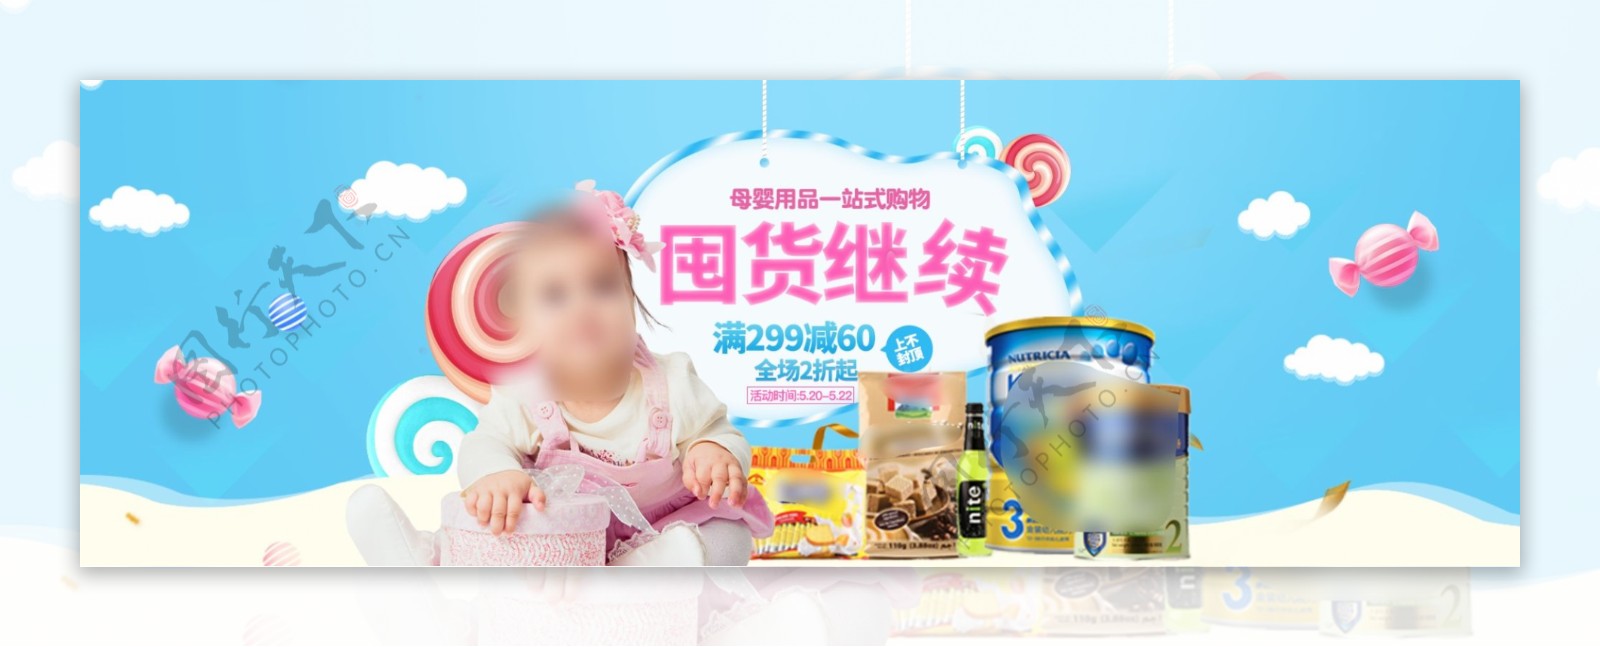 天猫天空蓝背景母婴产品海报